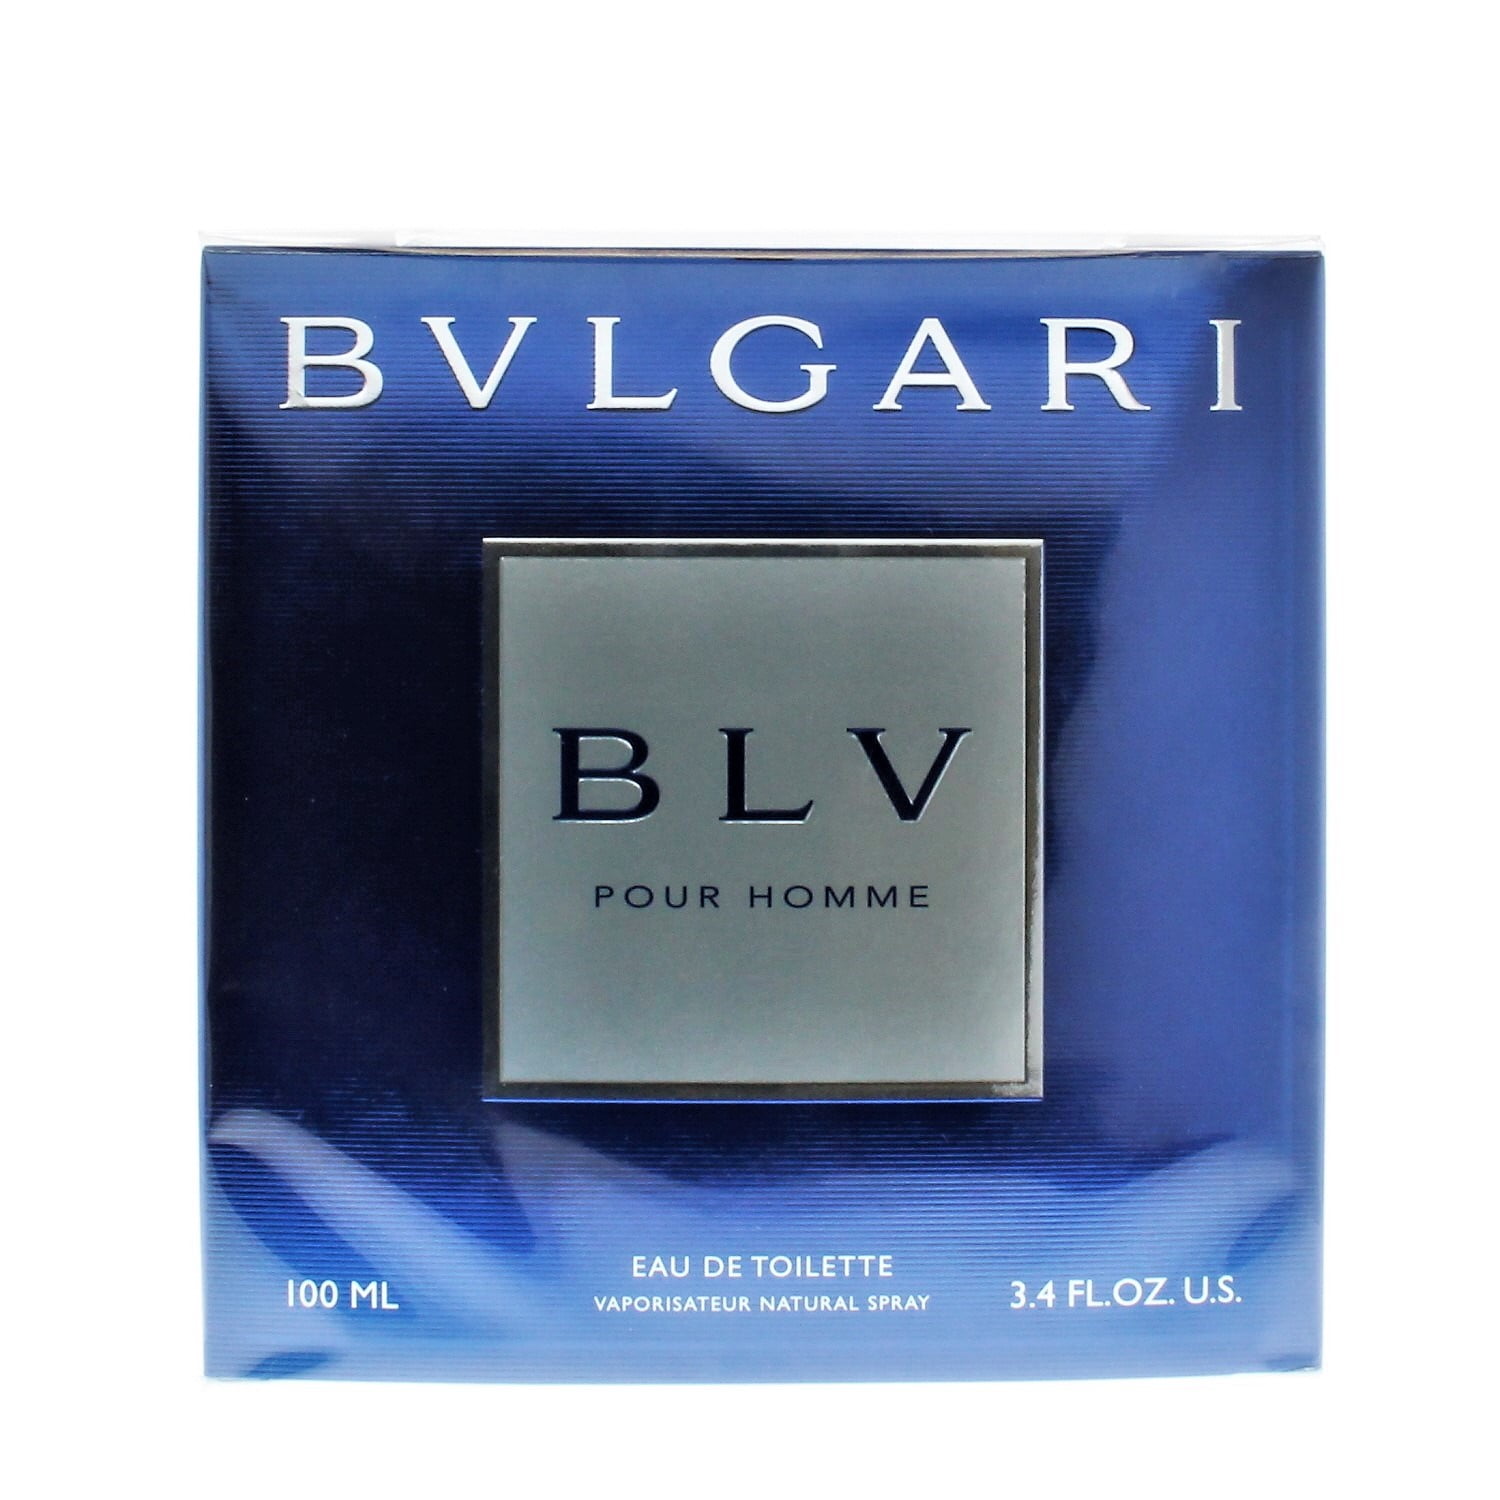 Bvlgari BLV 3.4 OZ / 100 ML EDT Spray for Men - Marie Aliese Beauty